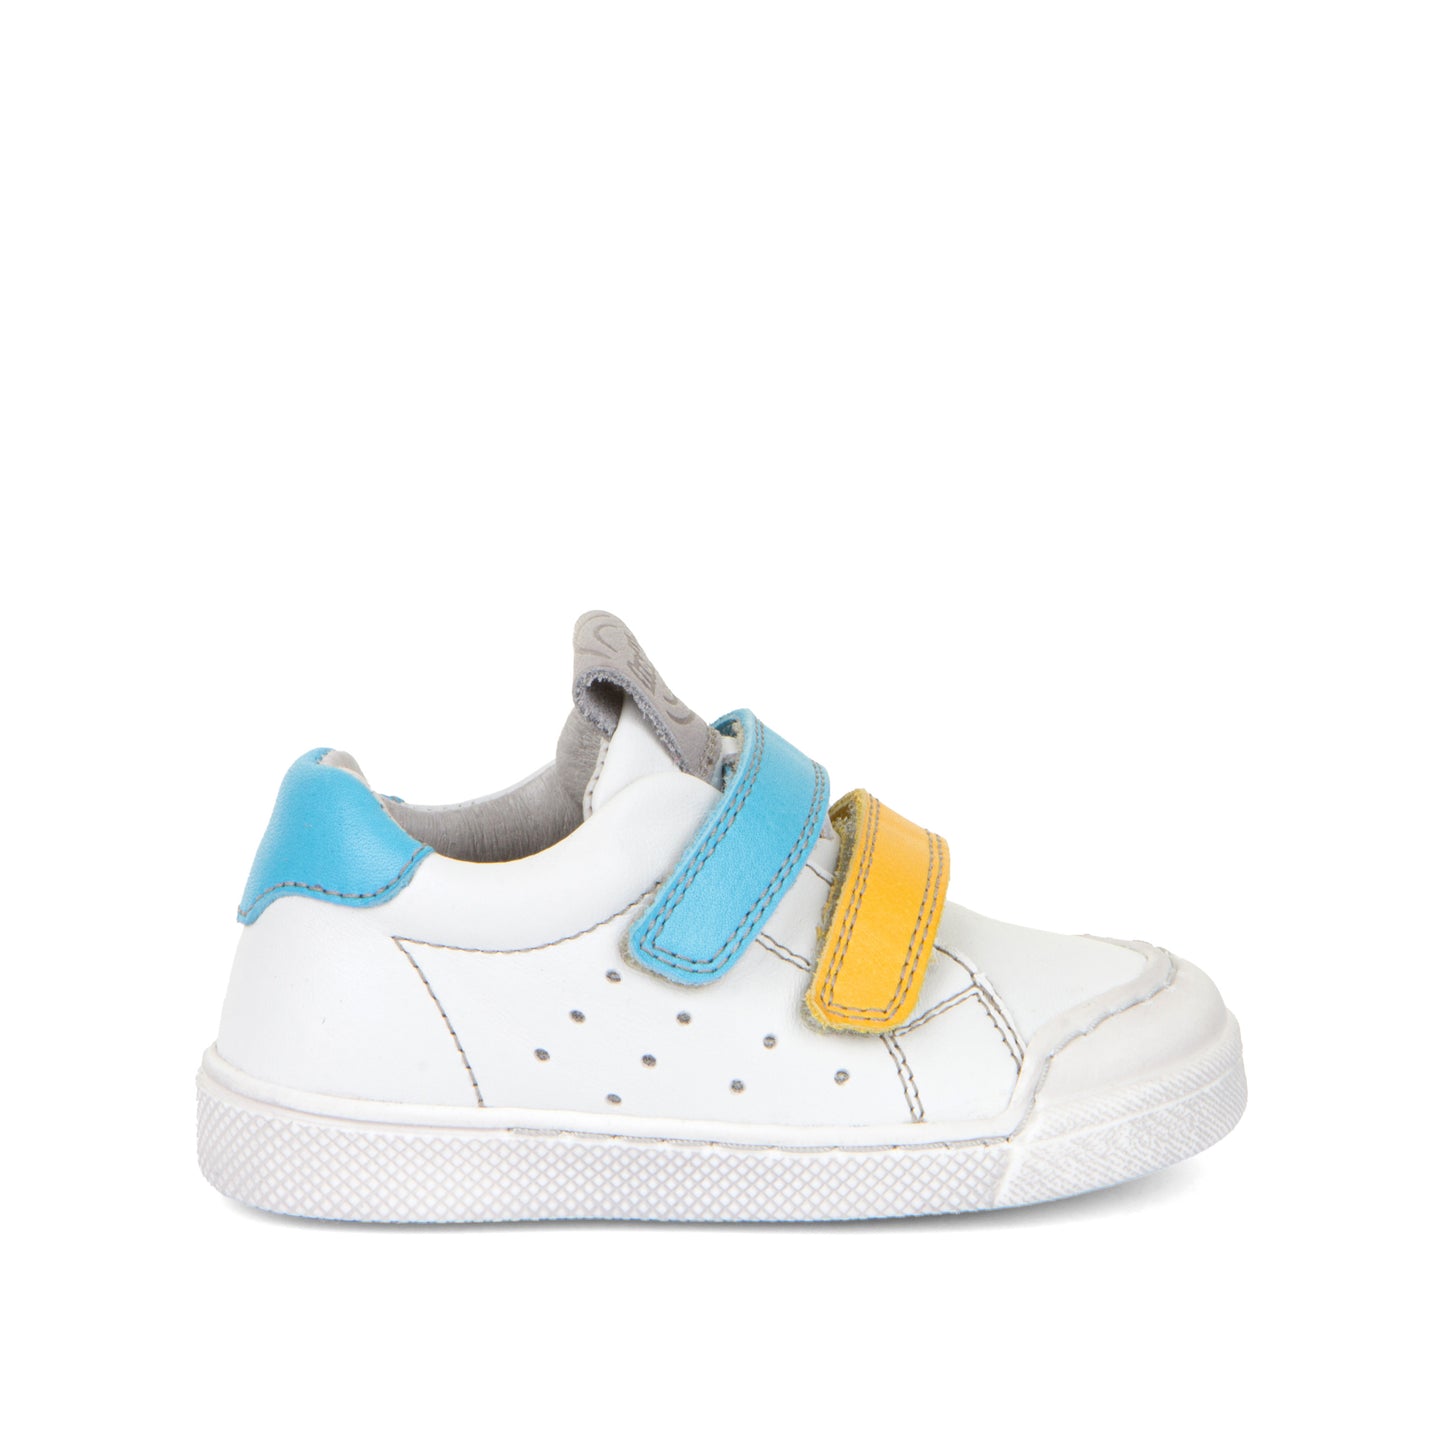 Witte lederen sneakers met 2 velrco's in het blauw en stootneus van het merk Froddo. Te verkrijgen bij kinderschoenwinkel September Stories in Berchem.